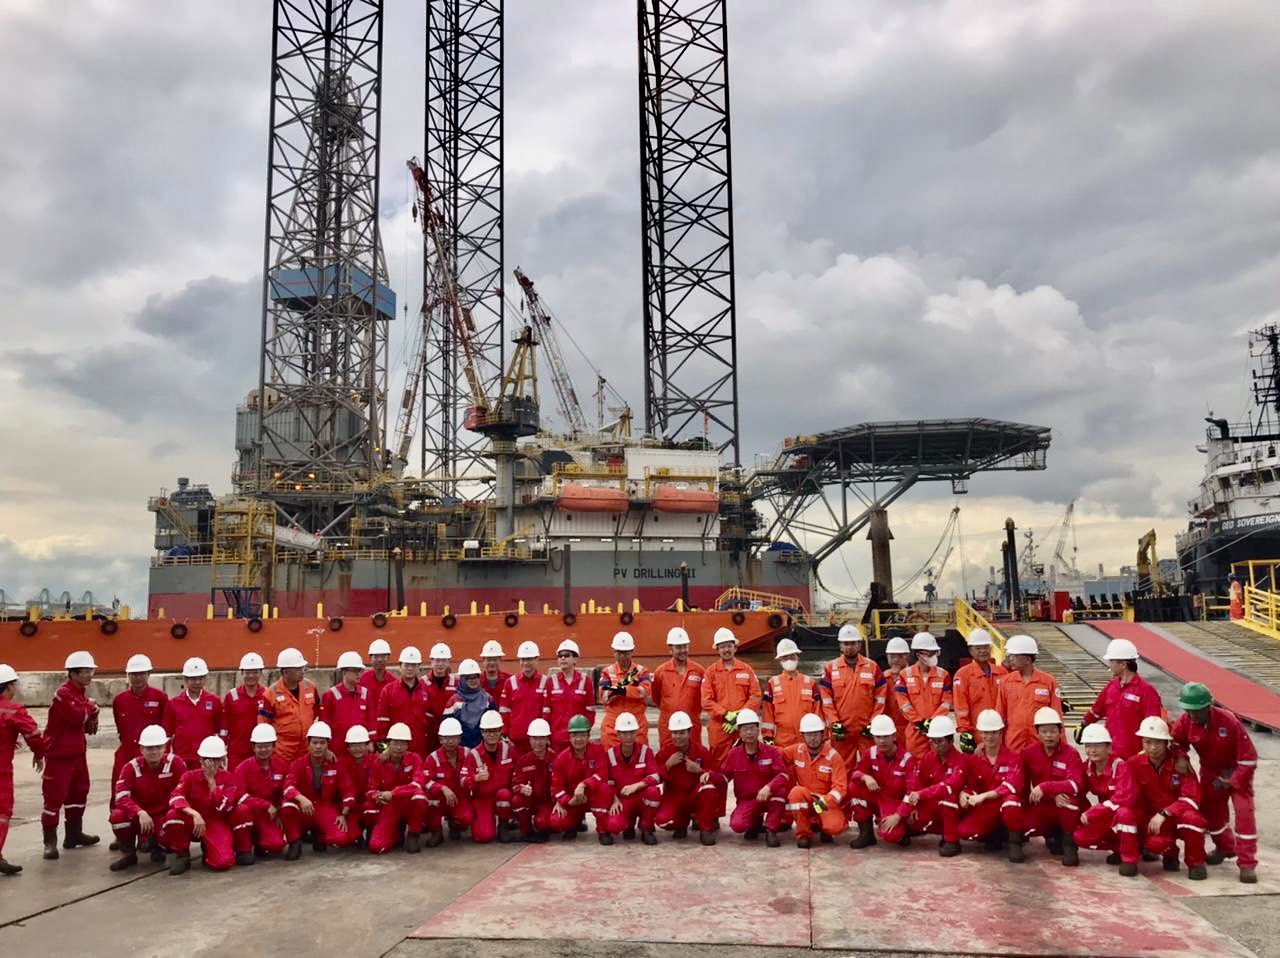 Ban lãnh đạo PV Drilling, khách hàng PHE ONWJ và đối tác Jimmulya chụp hình cùng tập thể người lao động trên giàn PV DRILLING II.